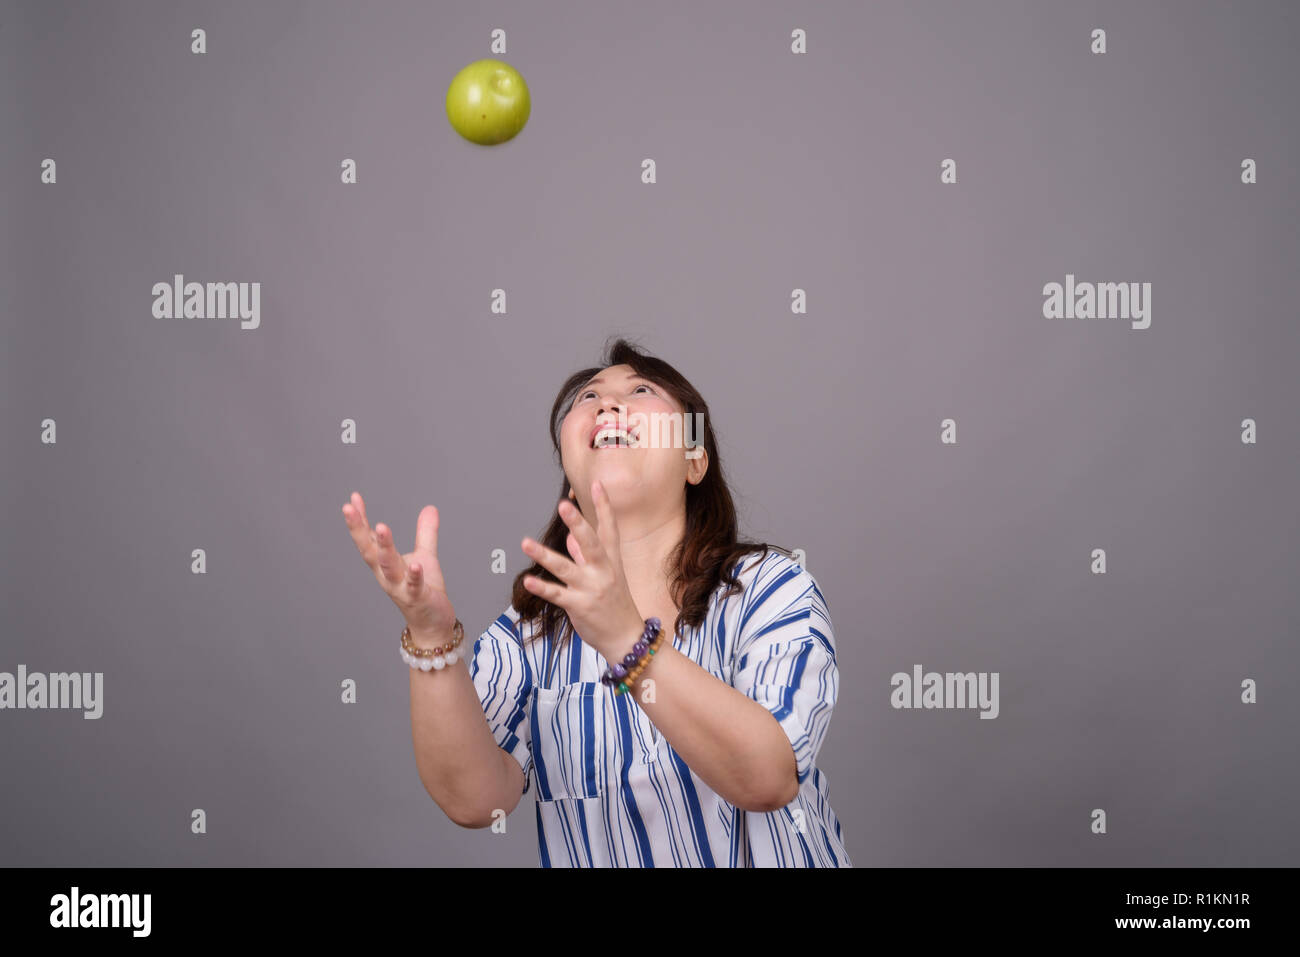 Portrait of mature Asian businesswoman attraper la pomme verte Banque D'Images